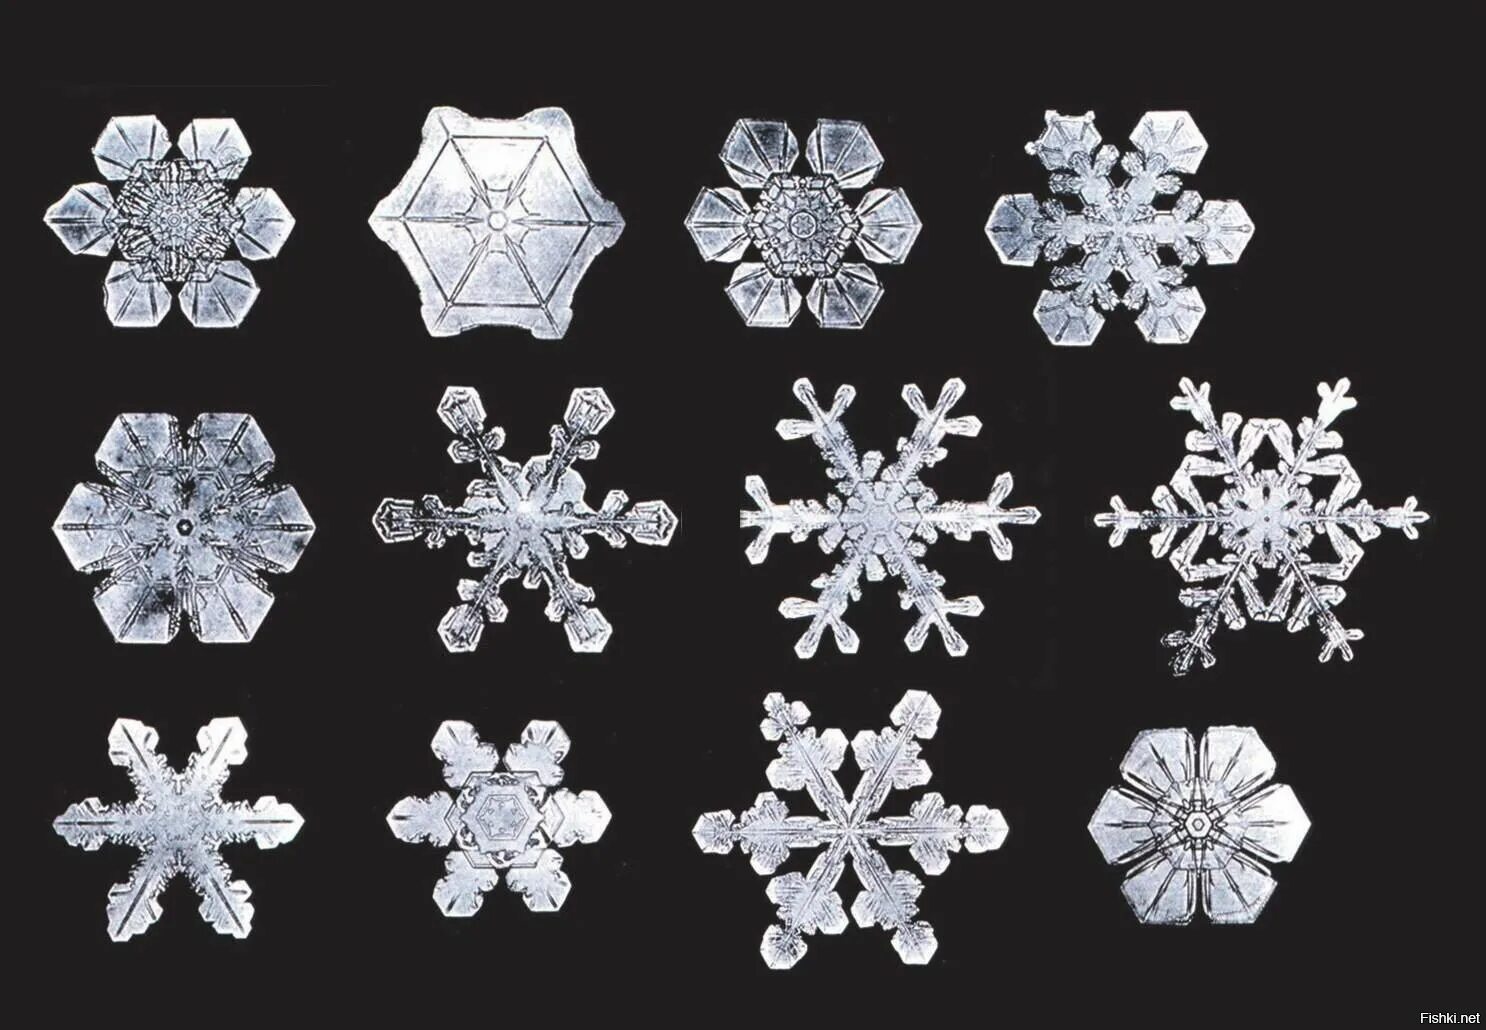 Впр снежинки бывают разные 4 класс. Формы снежинок. Разнообразие снежинок. Кристаллы снежинок. Разнообразие форм снежинок.